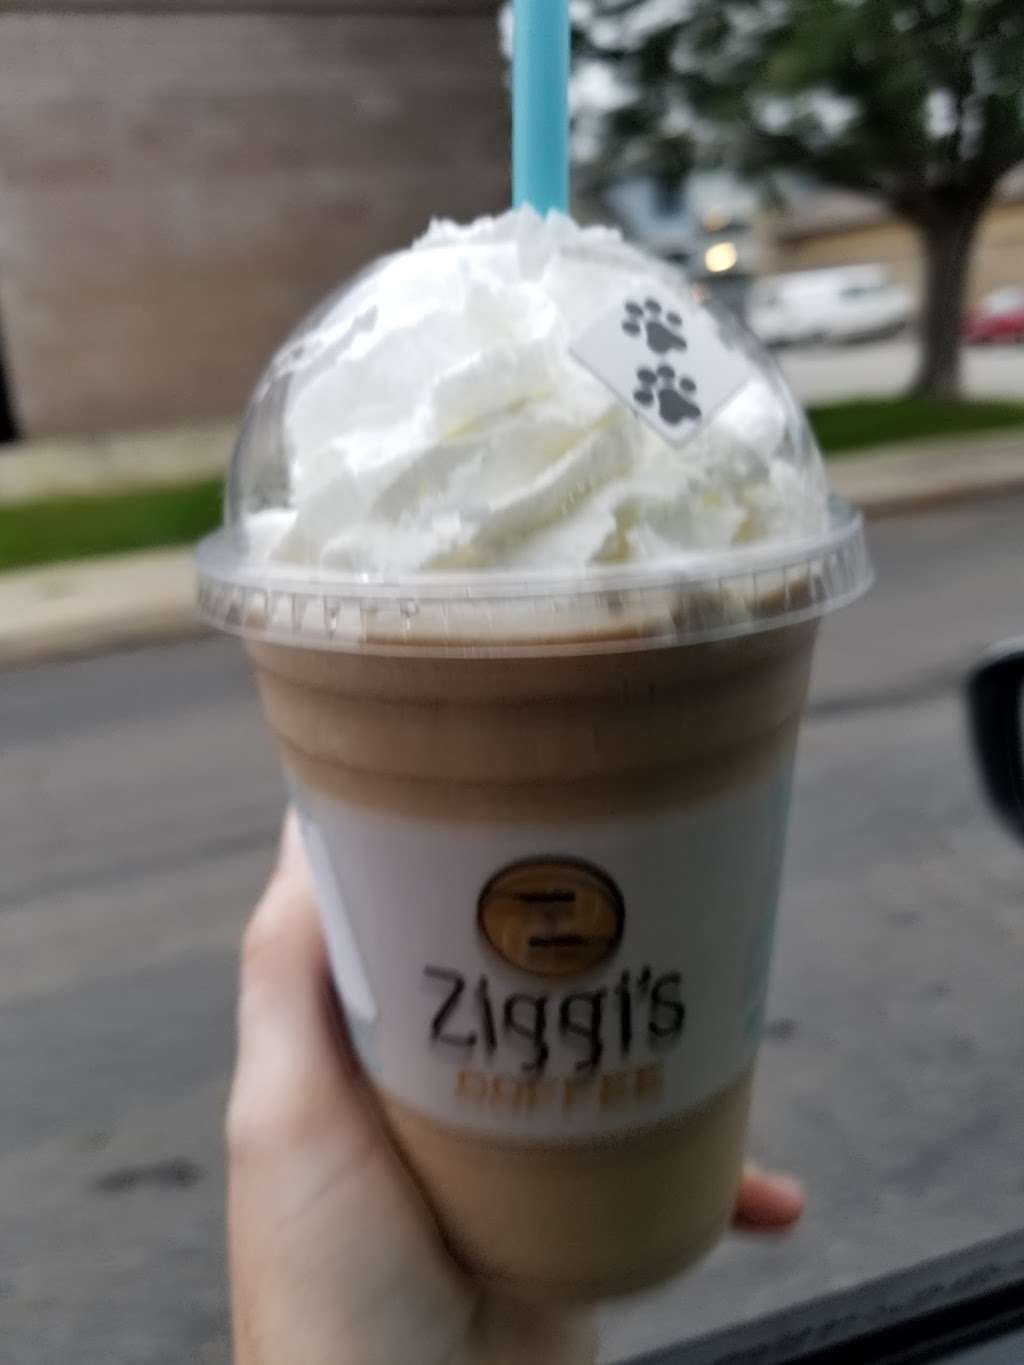 Ziggis Coffee | 1729 Hover St, Longmont, CO 80501, USA | Phone: (303) 682-5120